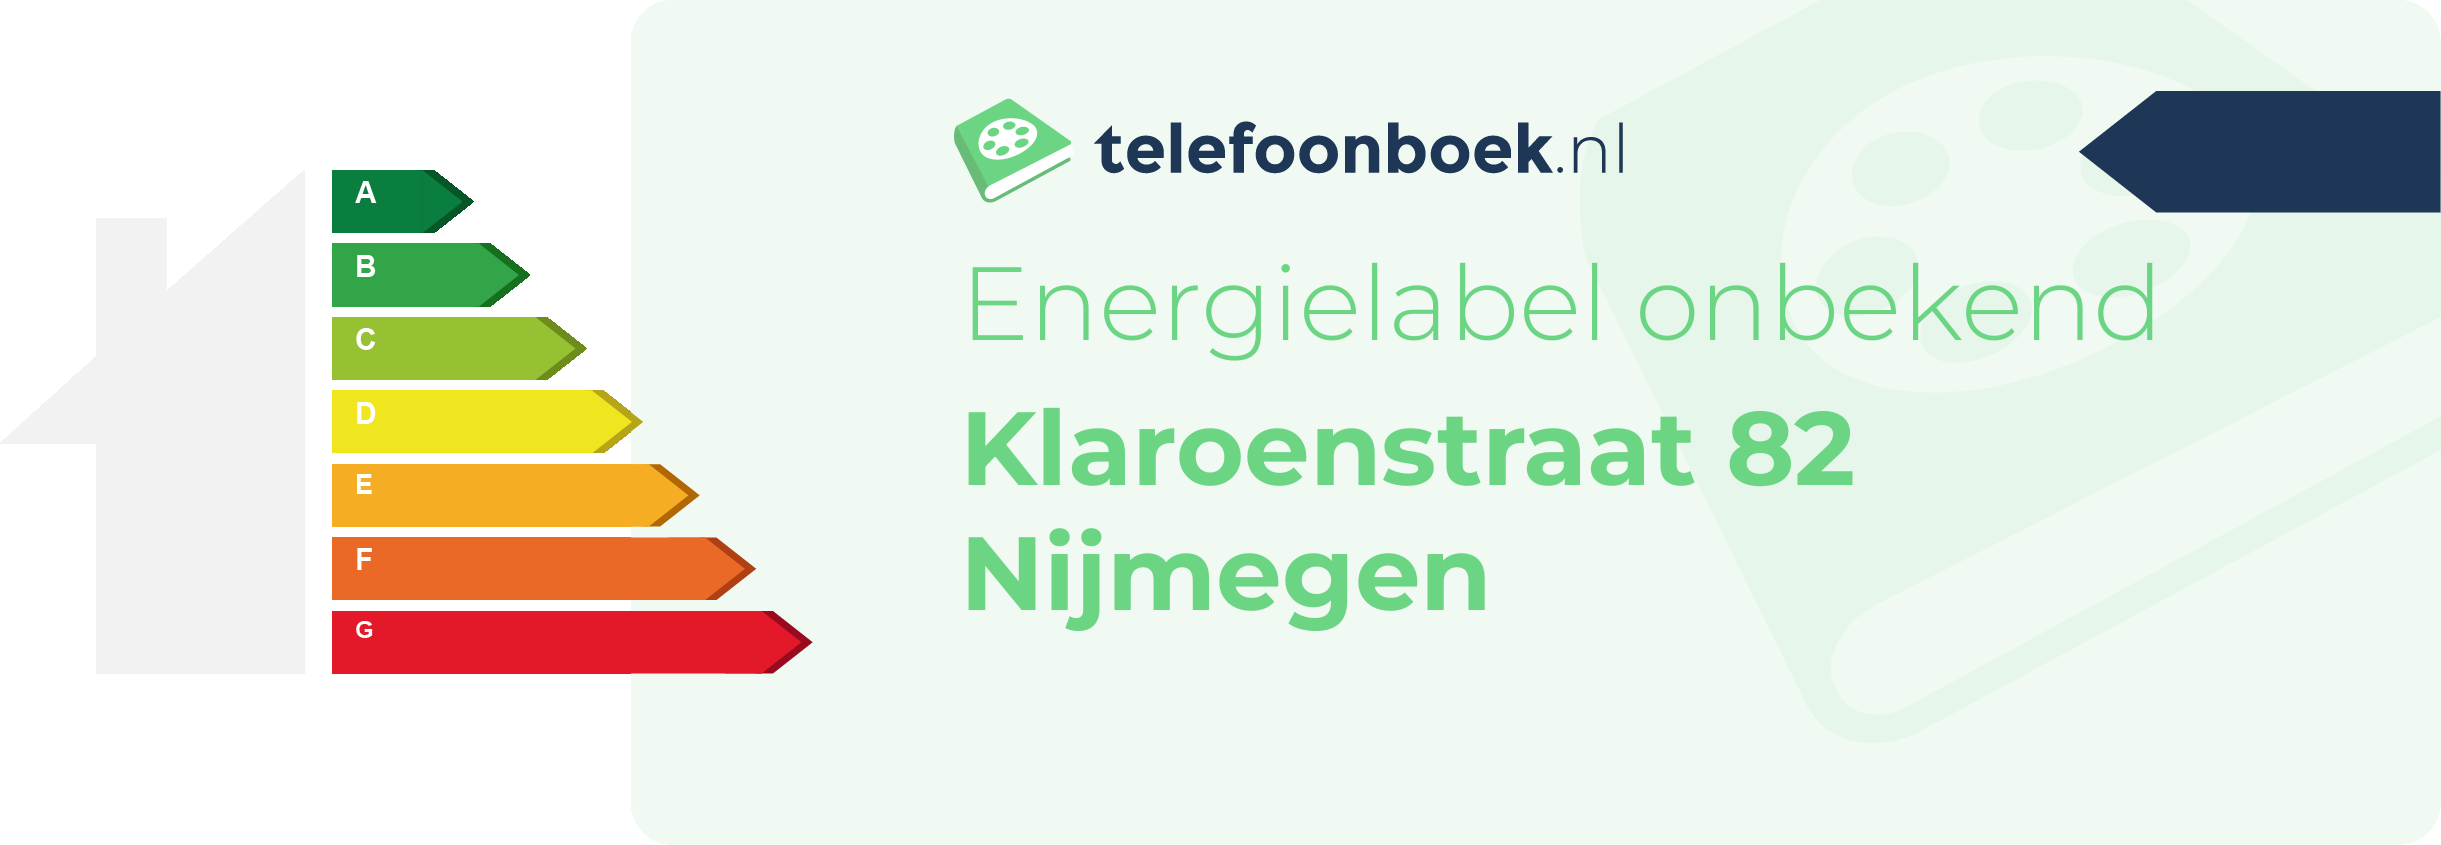 Energielabel Klaroenstraat 82 Nijmegen